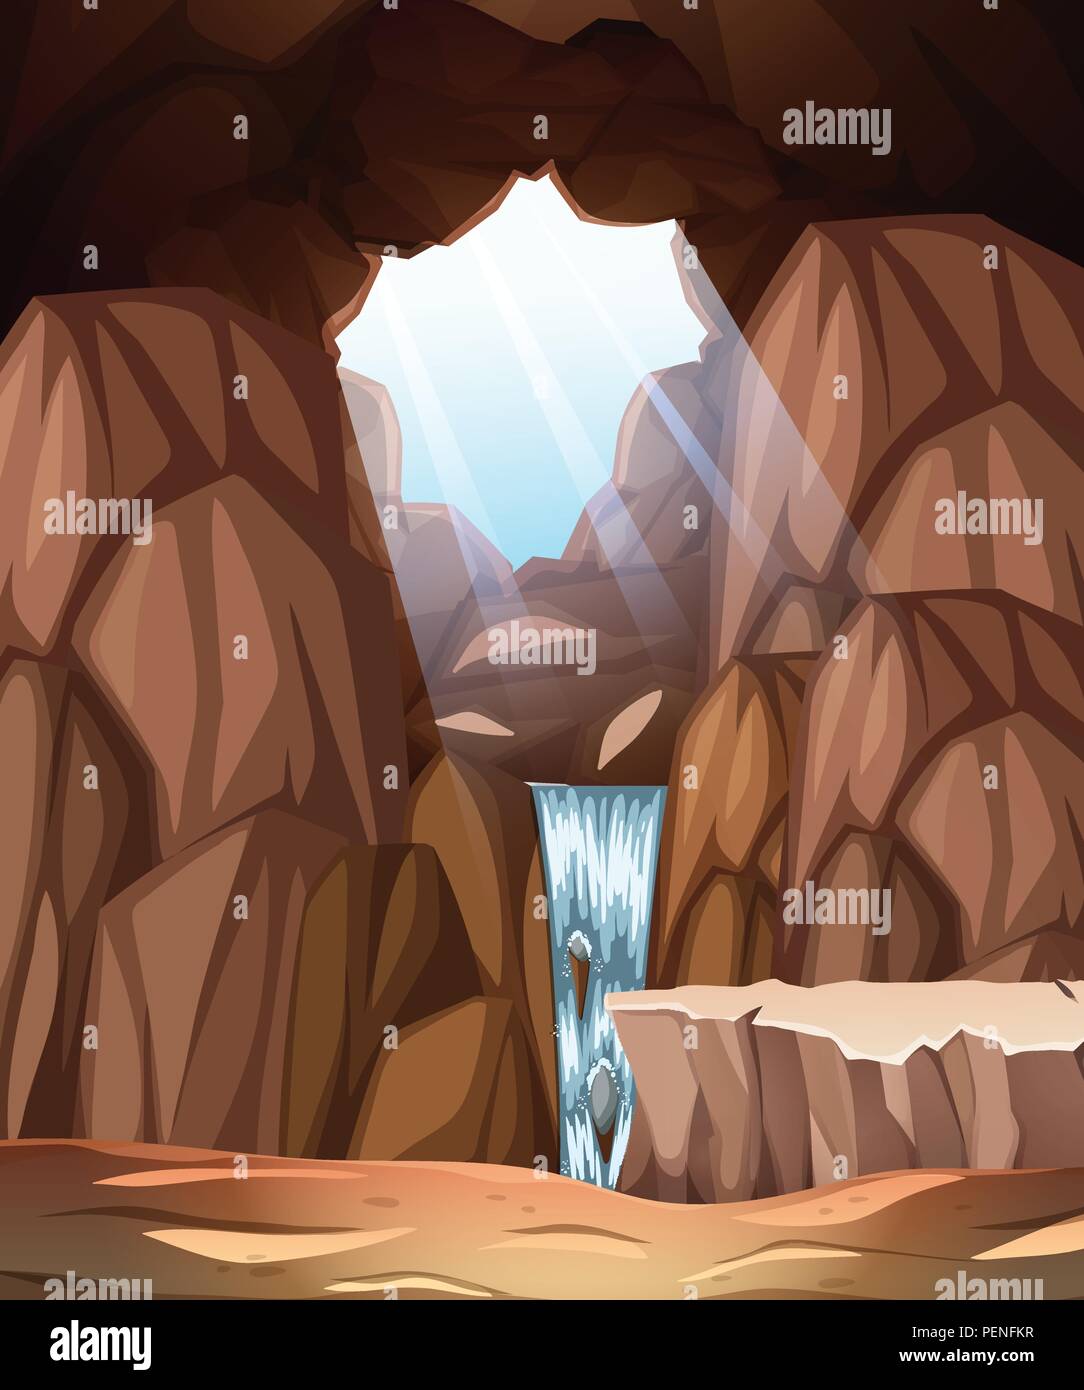 Scène de cave avec puits et chute d'illustration Illustration de Vecteur